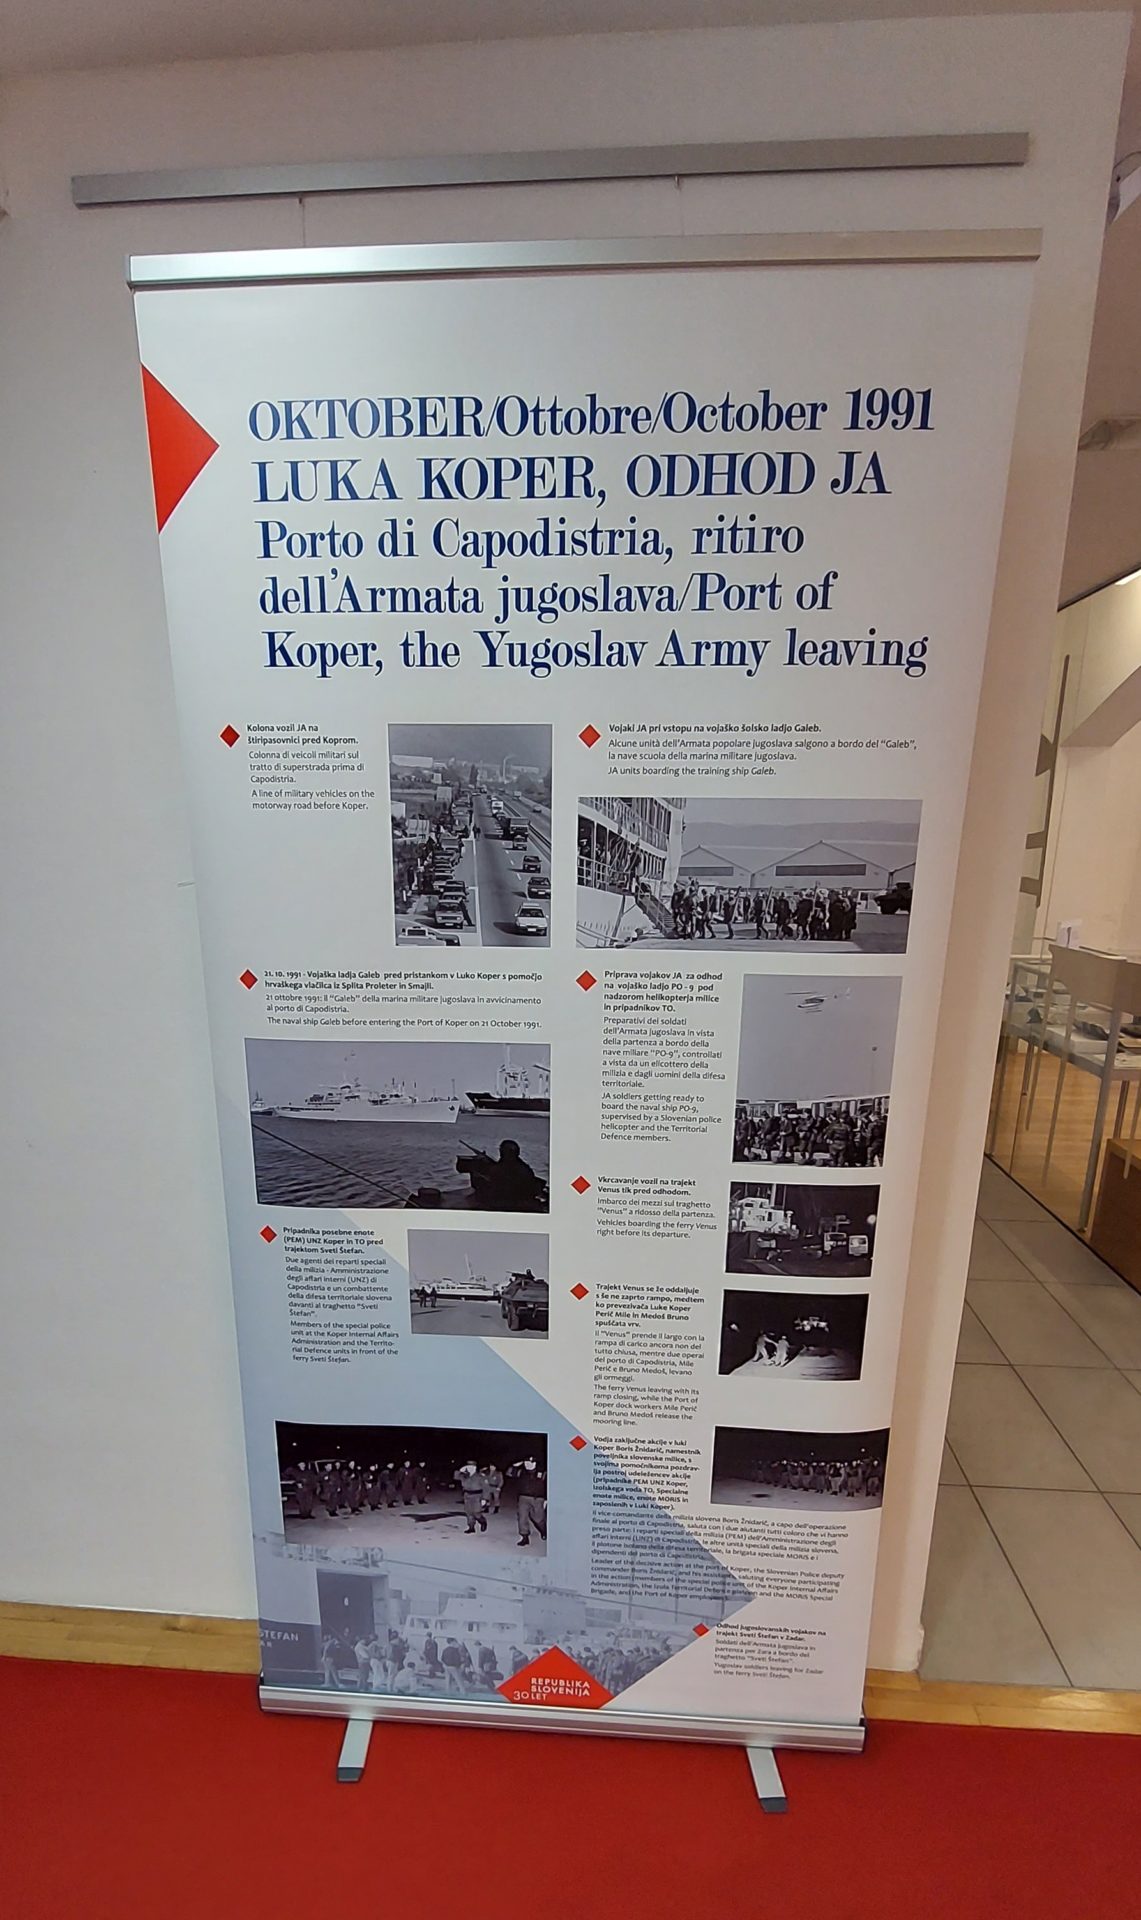 20220429 171902 - Dan prej - med vojno in mirom - Vojna za samostojno Slovenijo 1991 - razstava Združenja Sever za Primorsko in Notranjsko